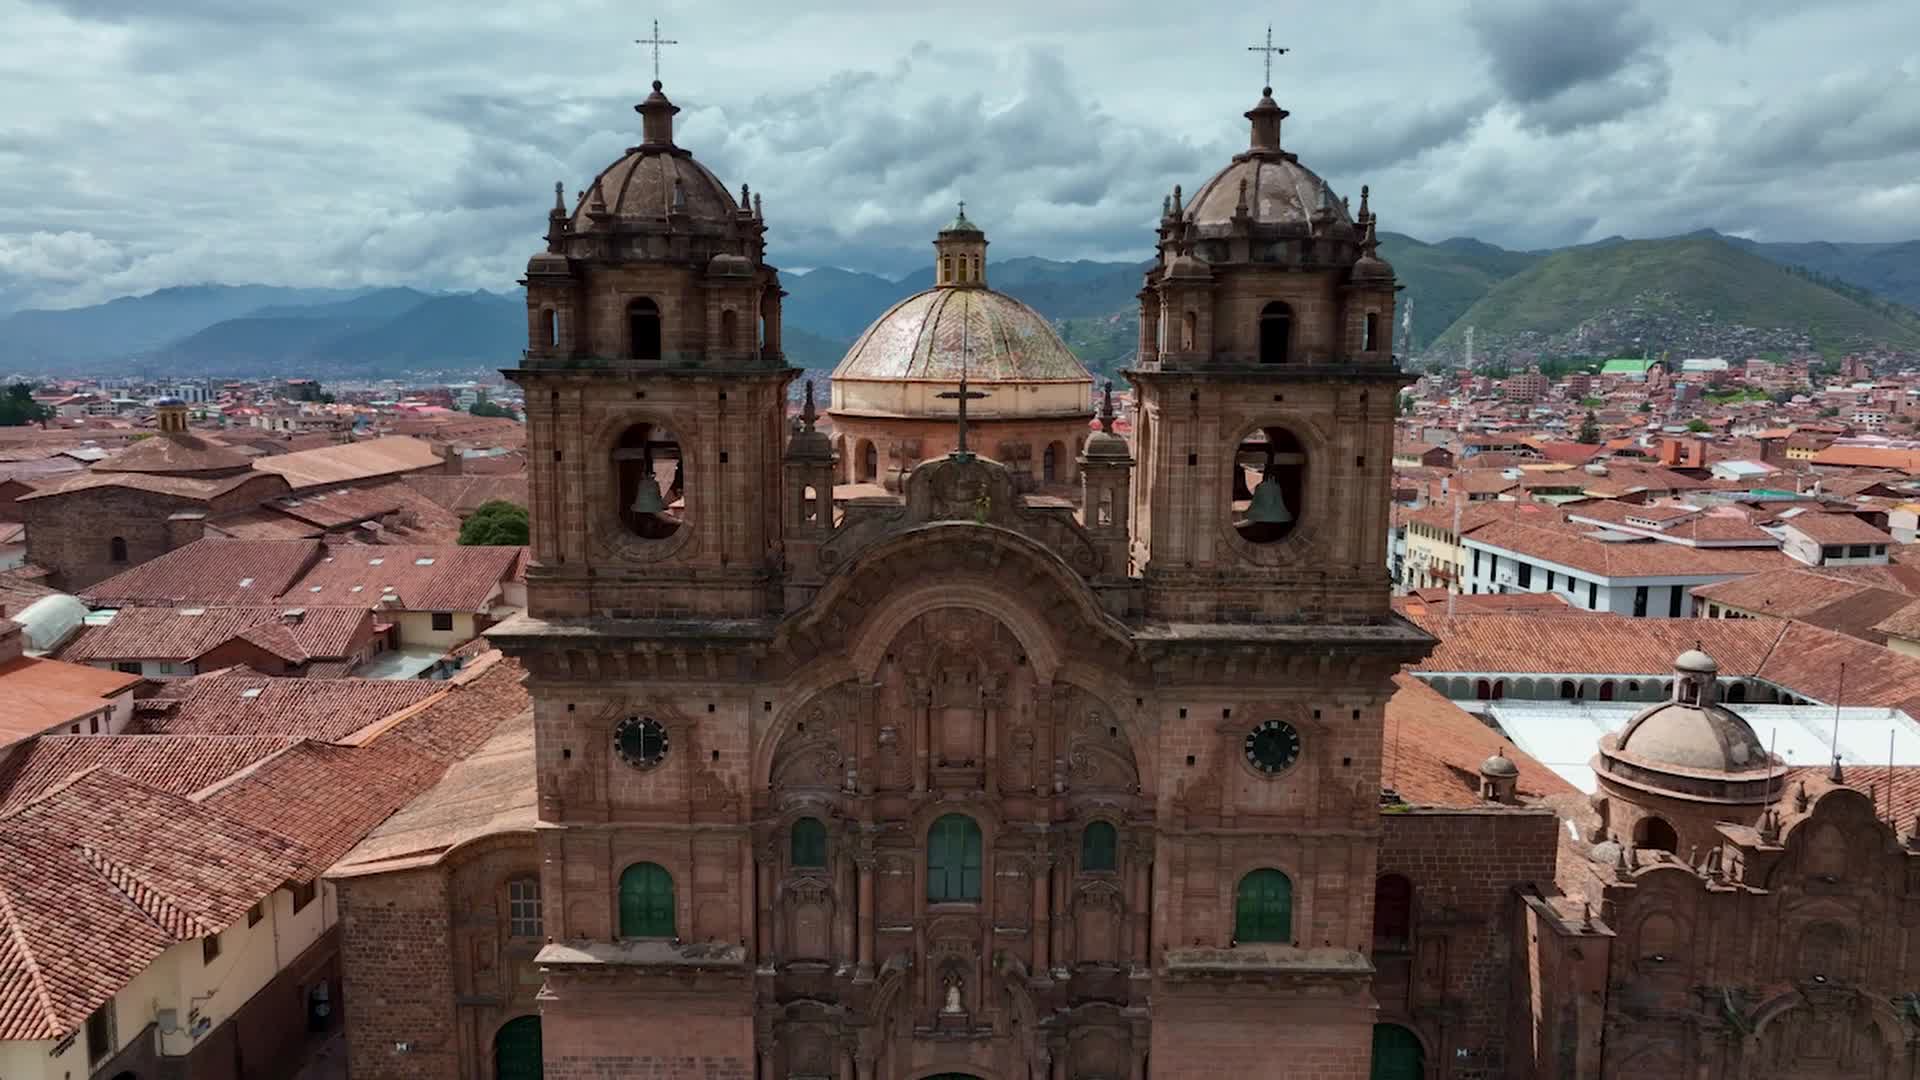 Belmond Hotel Monasterio  Unique Hotels in Cusco, Peru